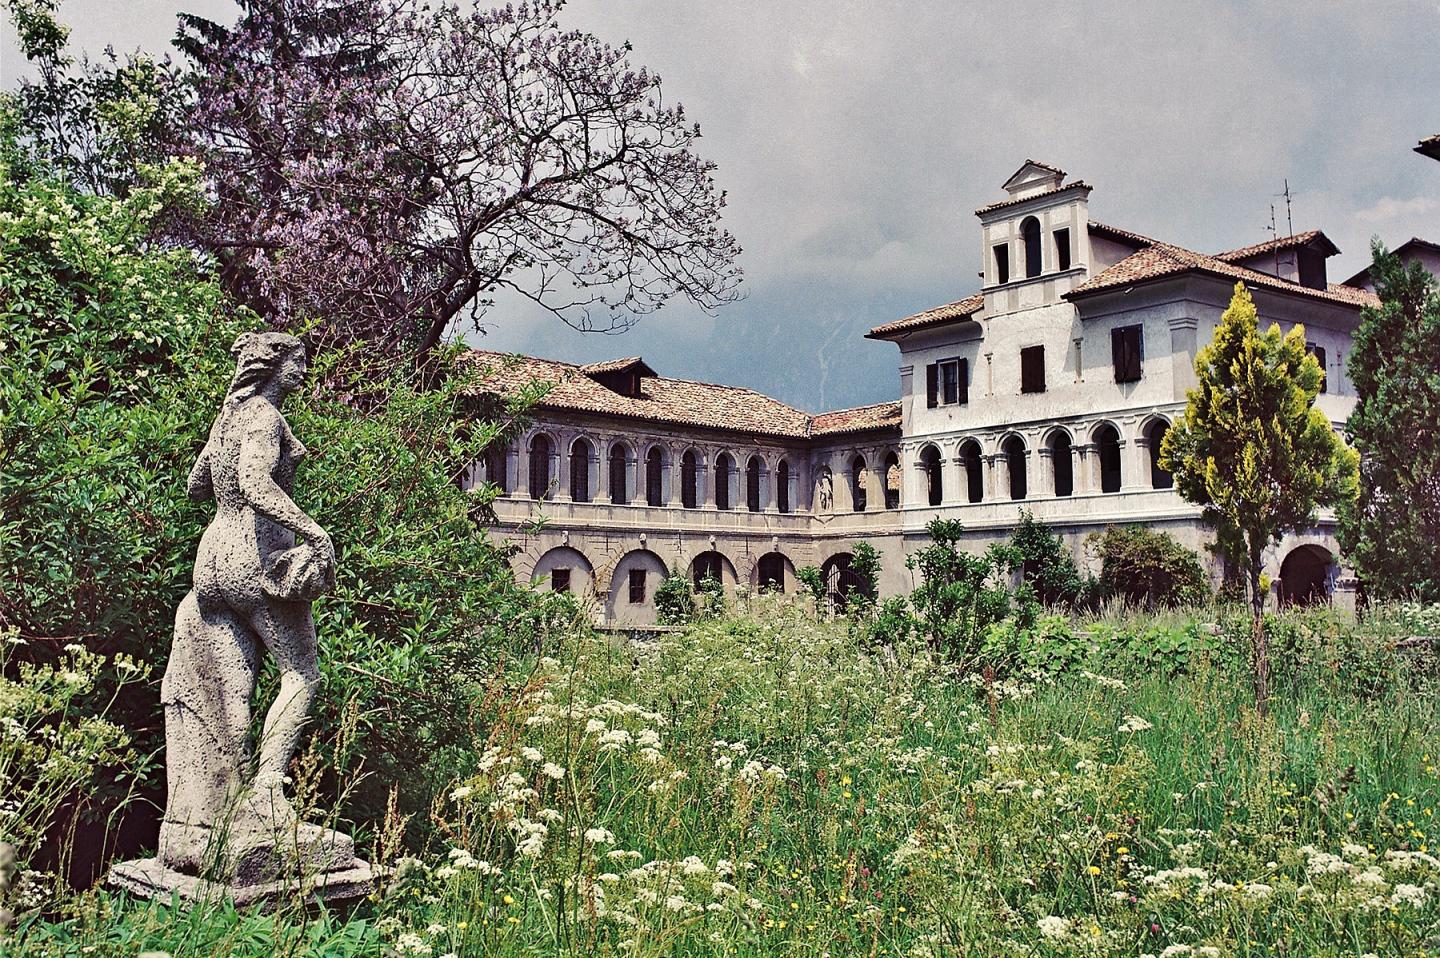 Agordo (BL), Villa Crotta de' Manzoni